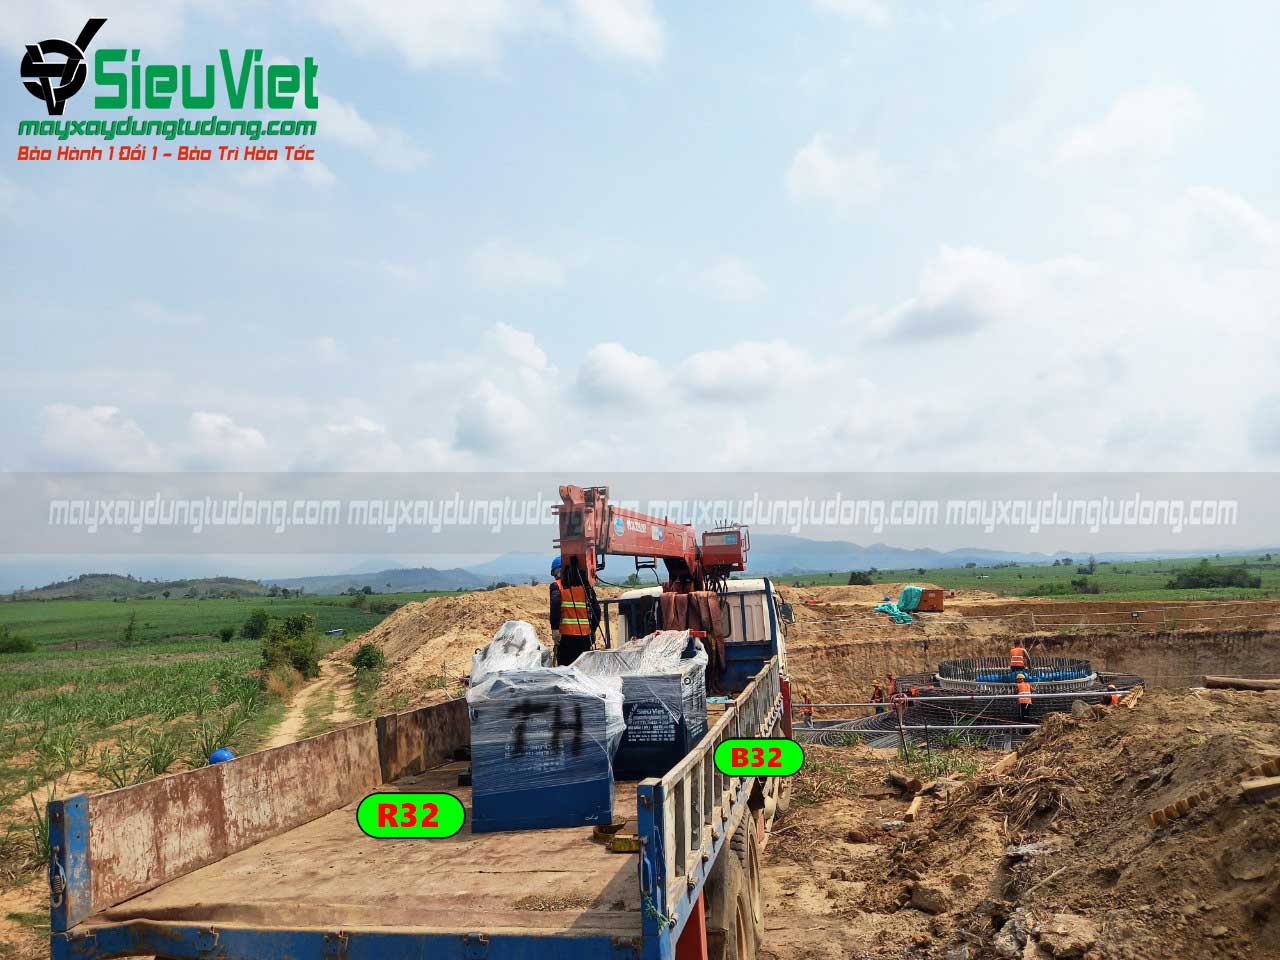 Hoạt động bàn giao máy gia công sắt của Siêu Việt tại dự án